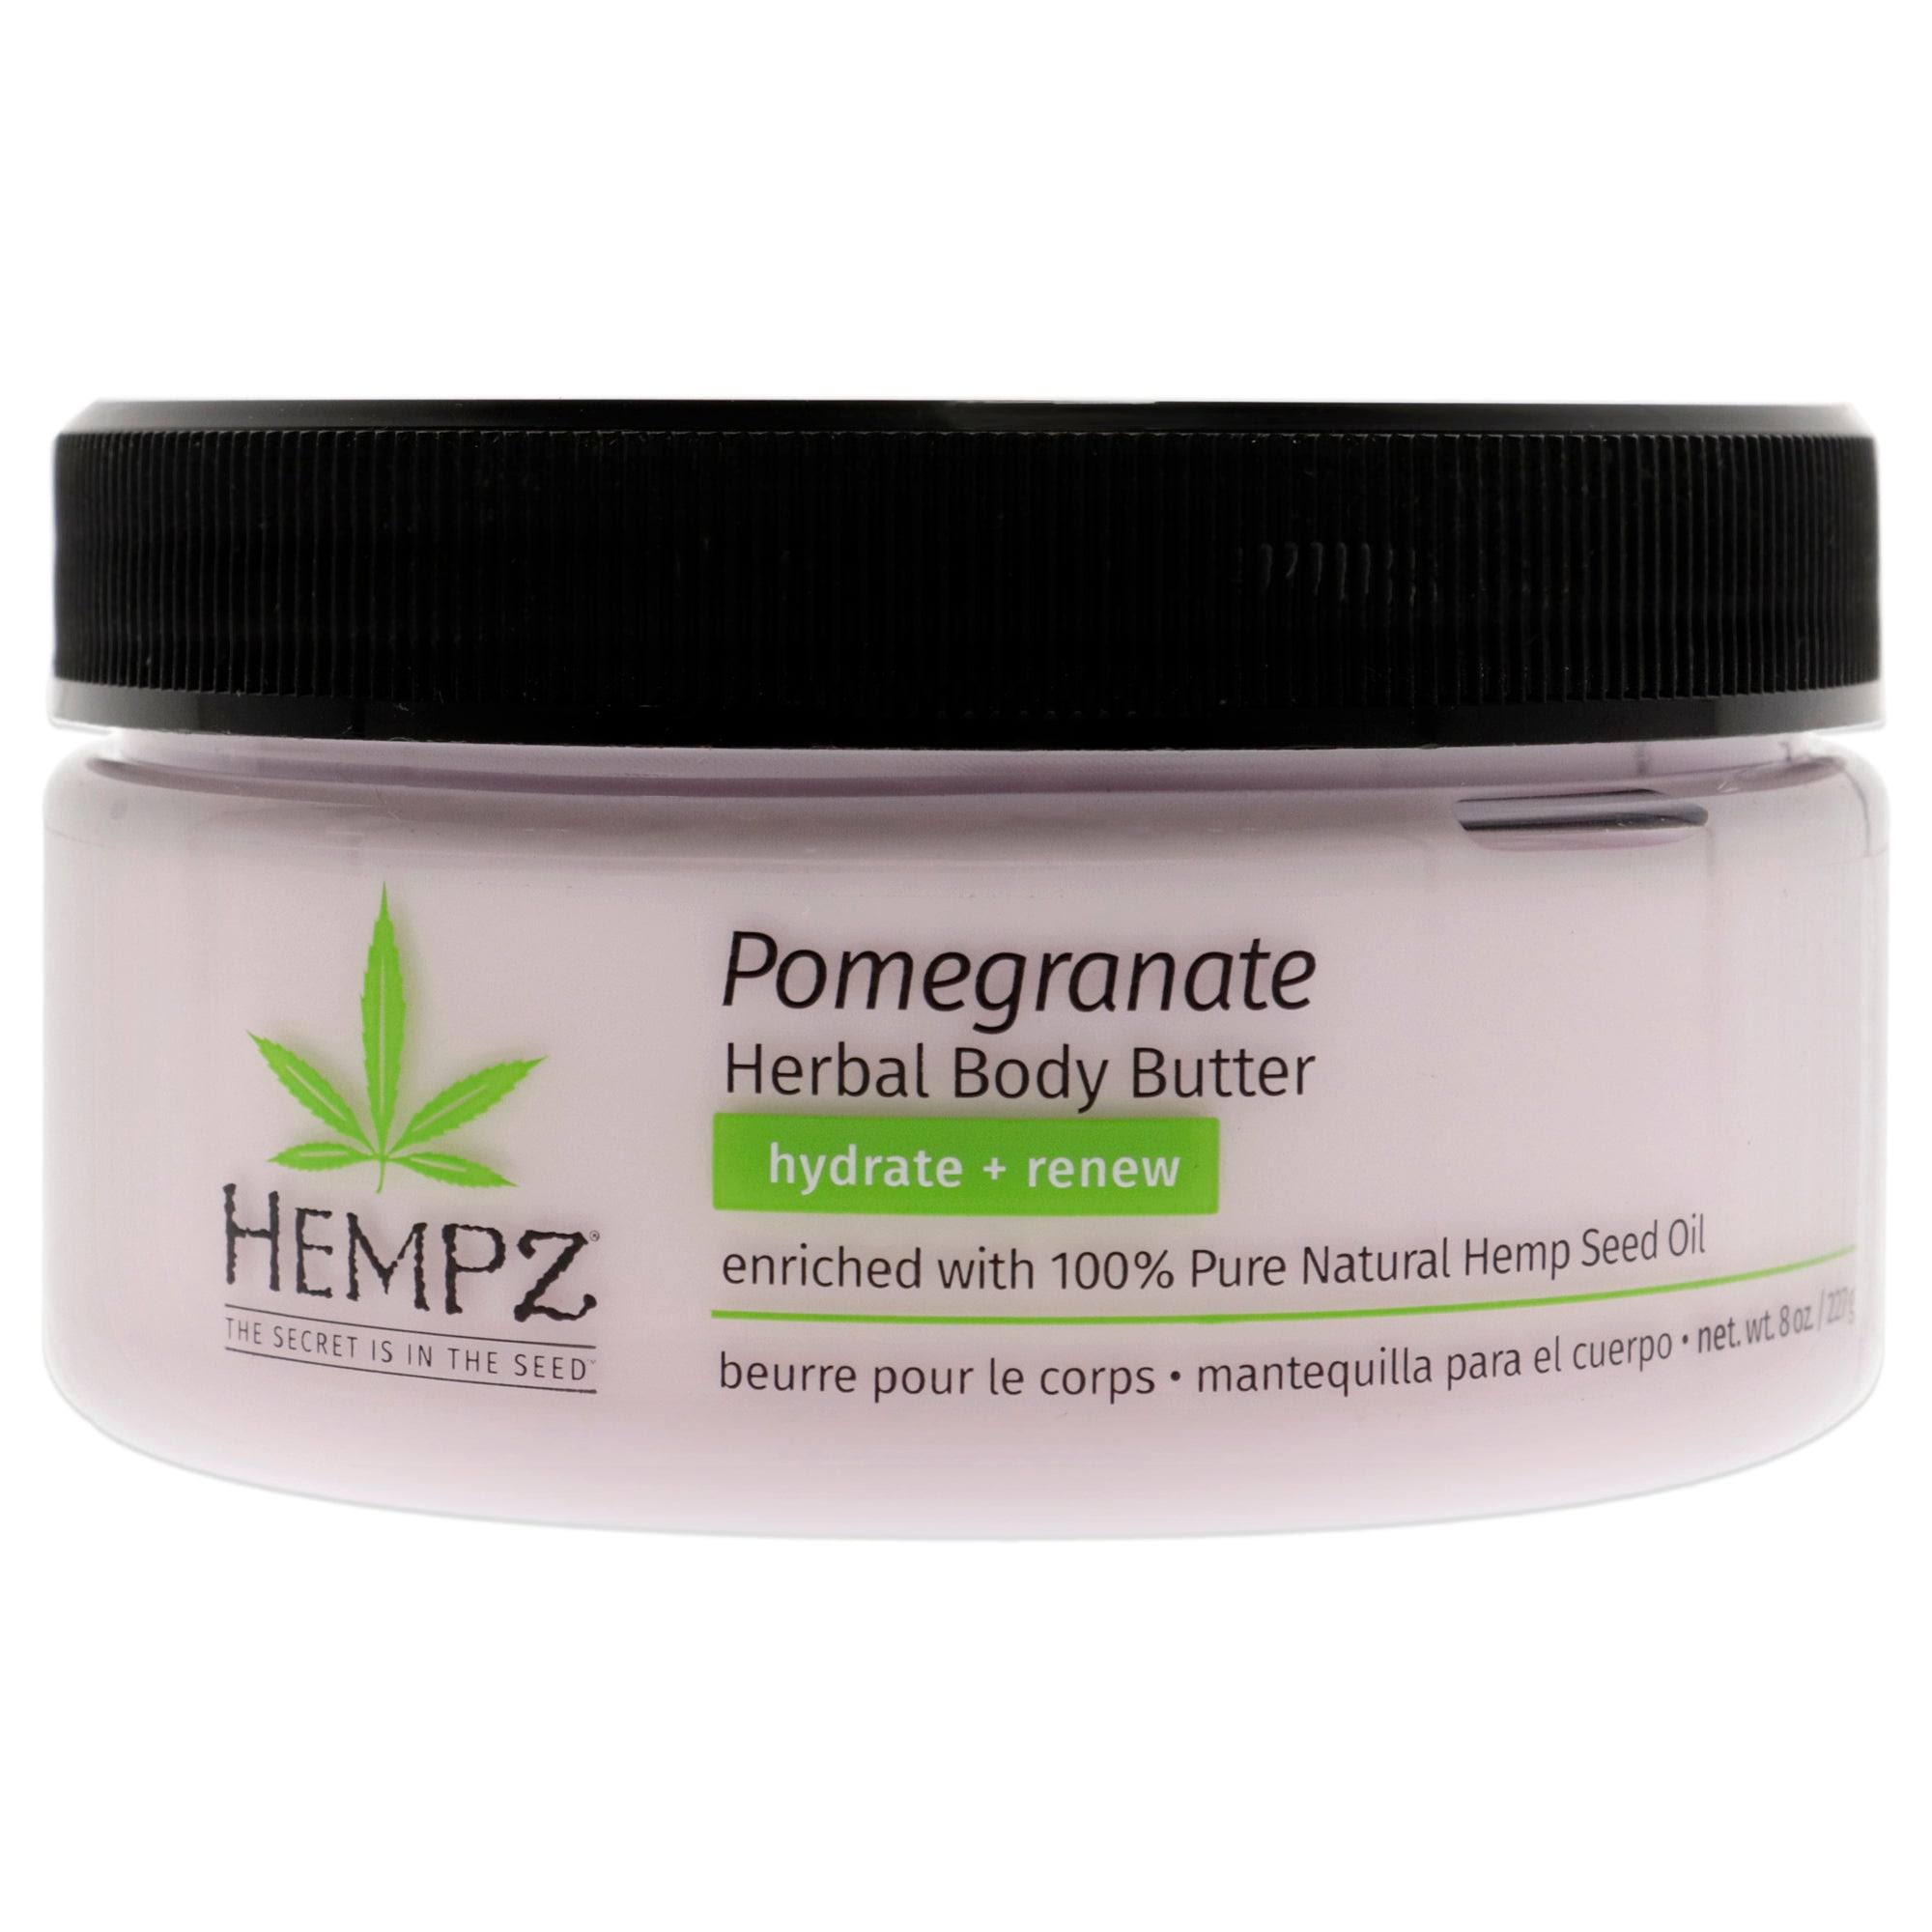 HEMPZ Pomegranate Herbal Body Butter, 8 oz